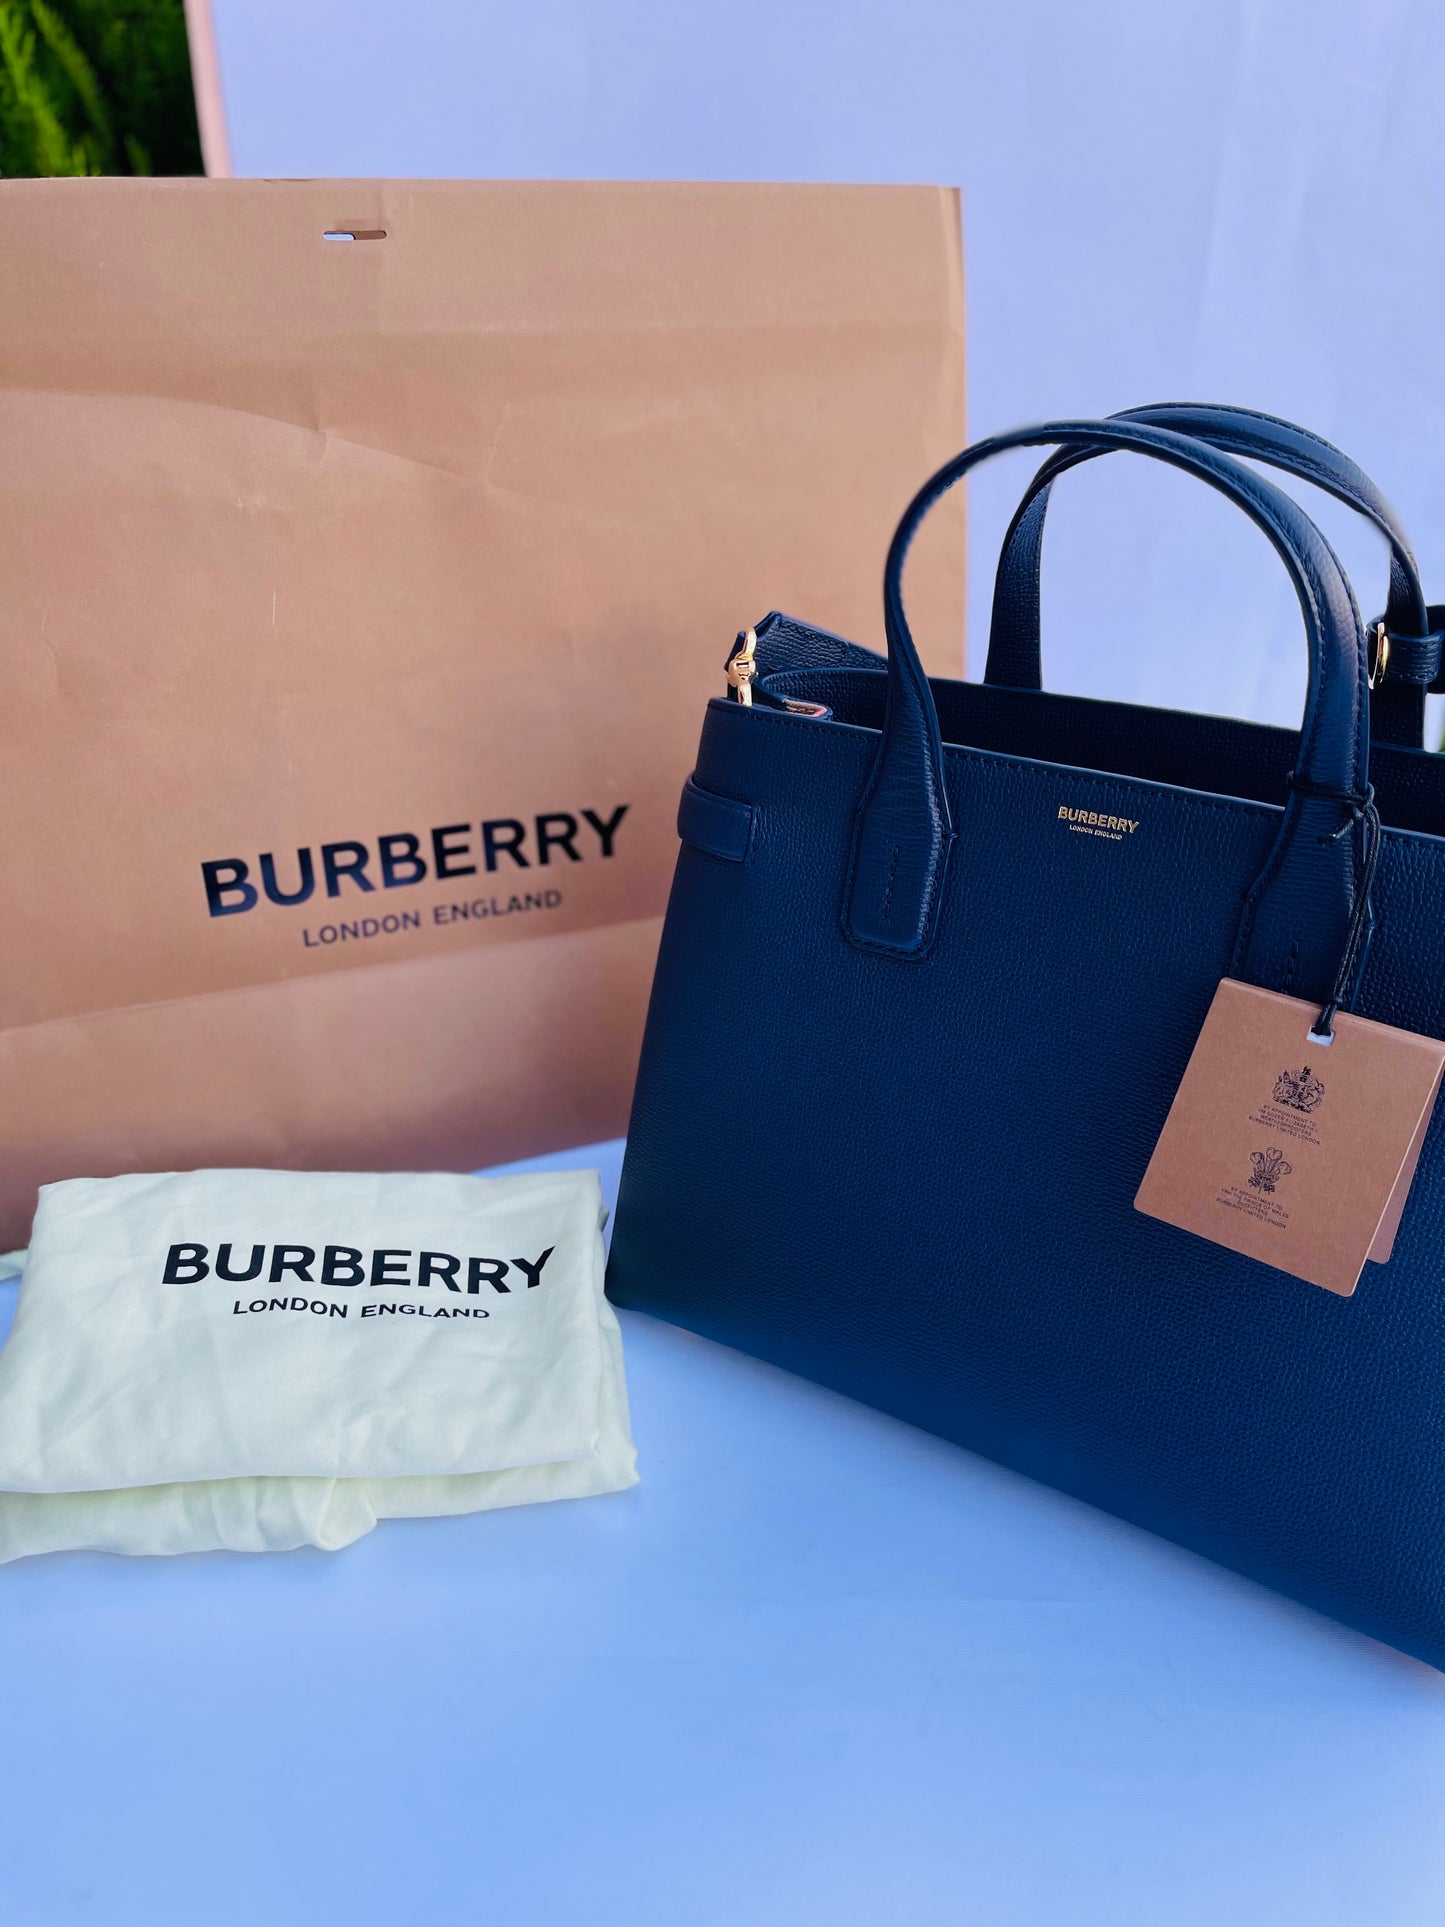 Burberry bag